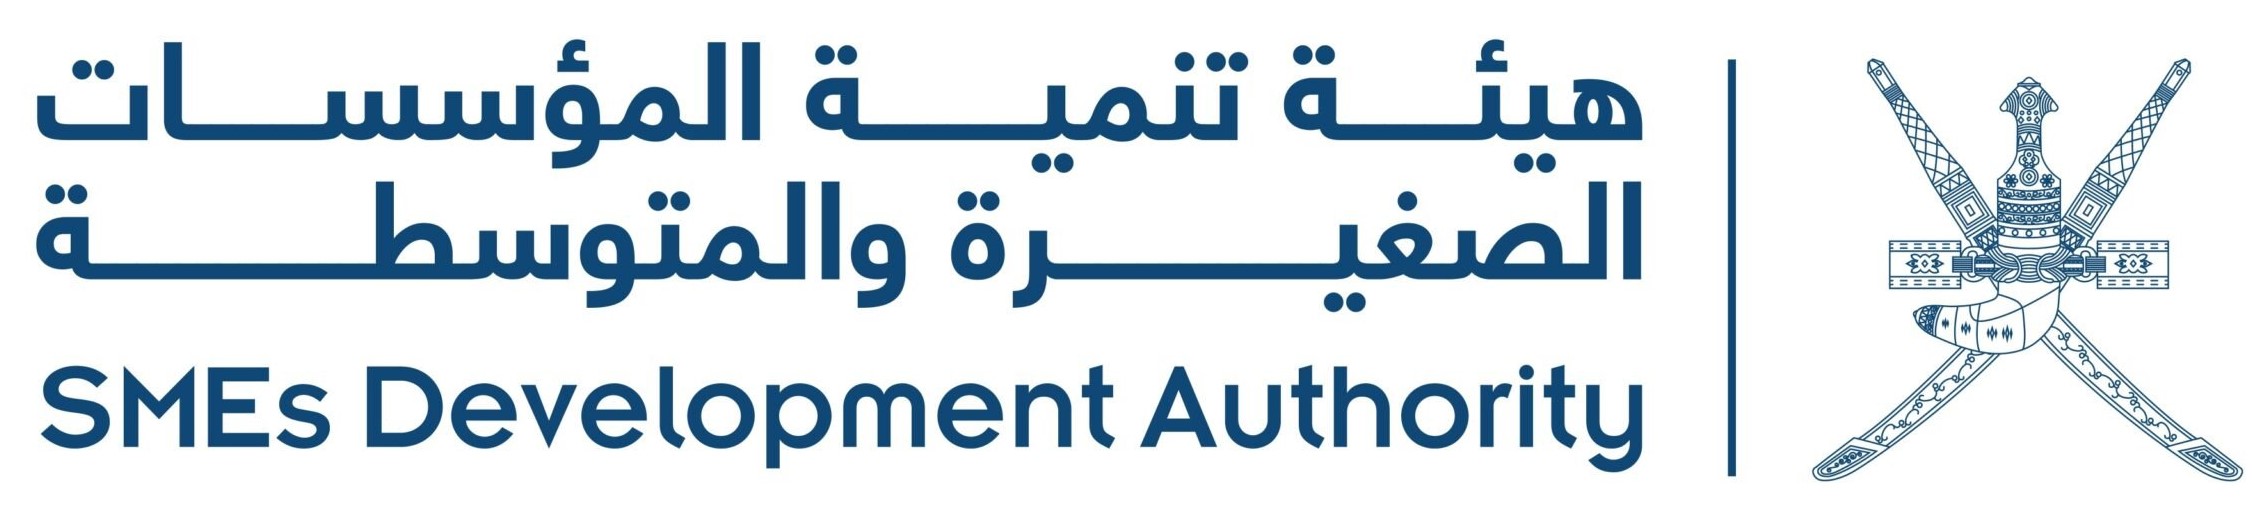 SMEDevelopmentAuthority-logo